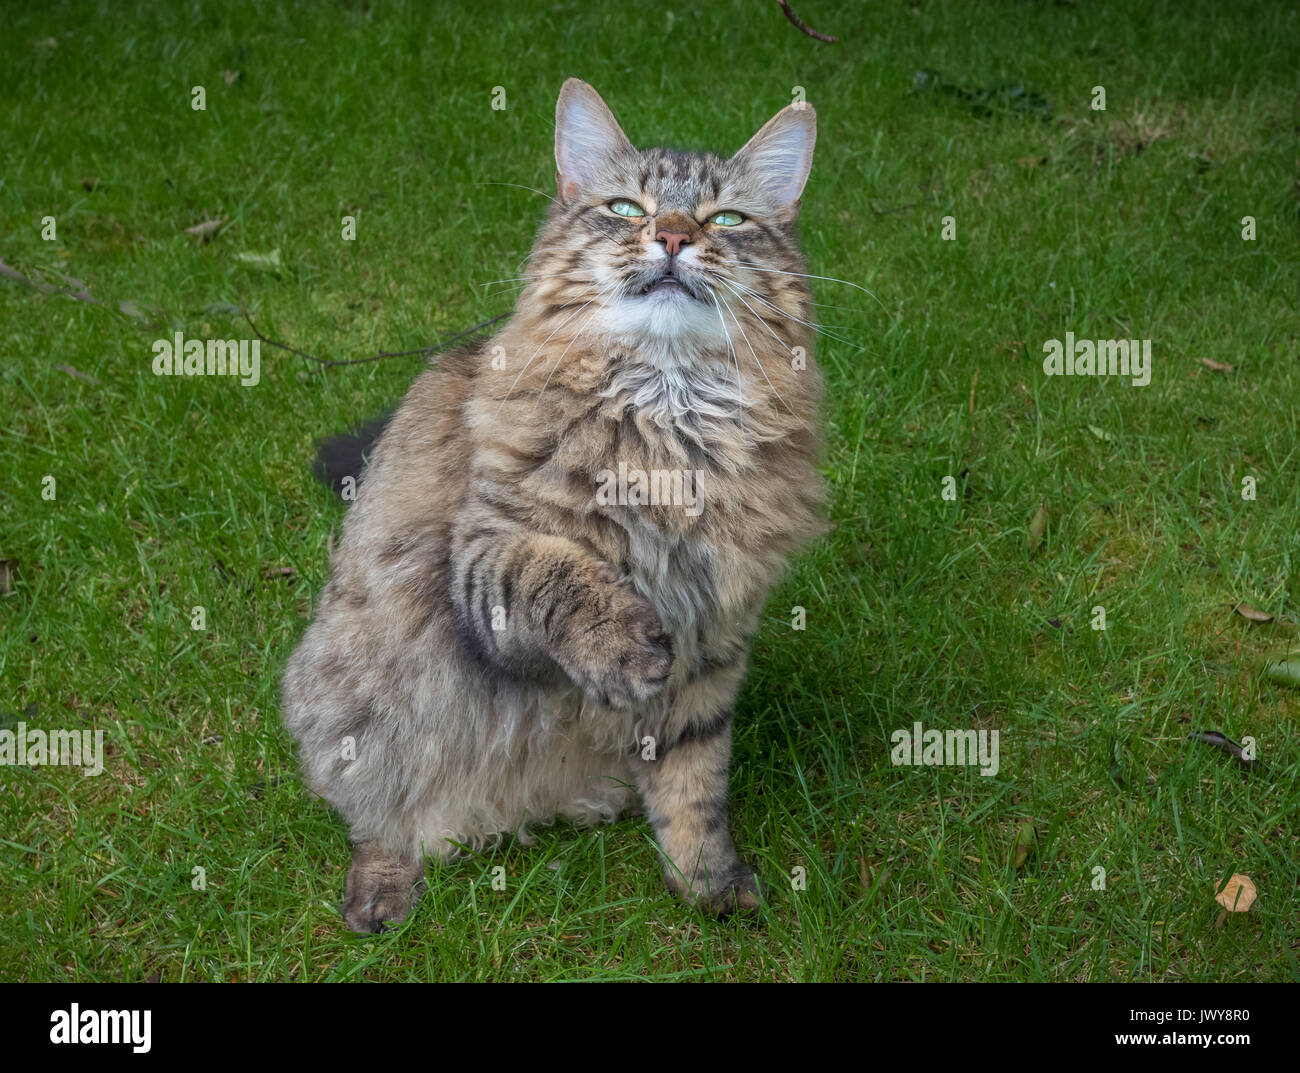 Capelli lunghi Tabby Cat seduto su un prato con una zampa sollevata fino a giocare mentre guardando la telecamera. Foto Stock